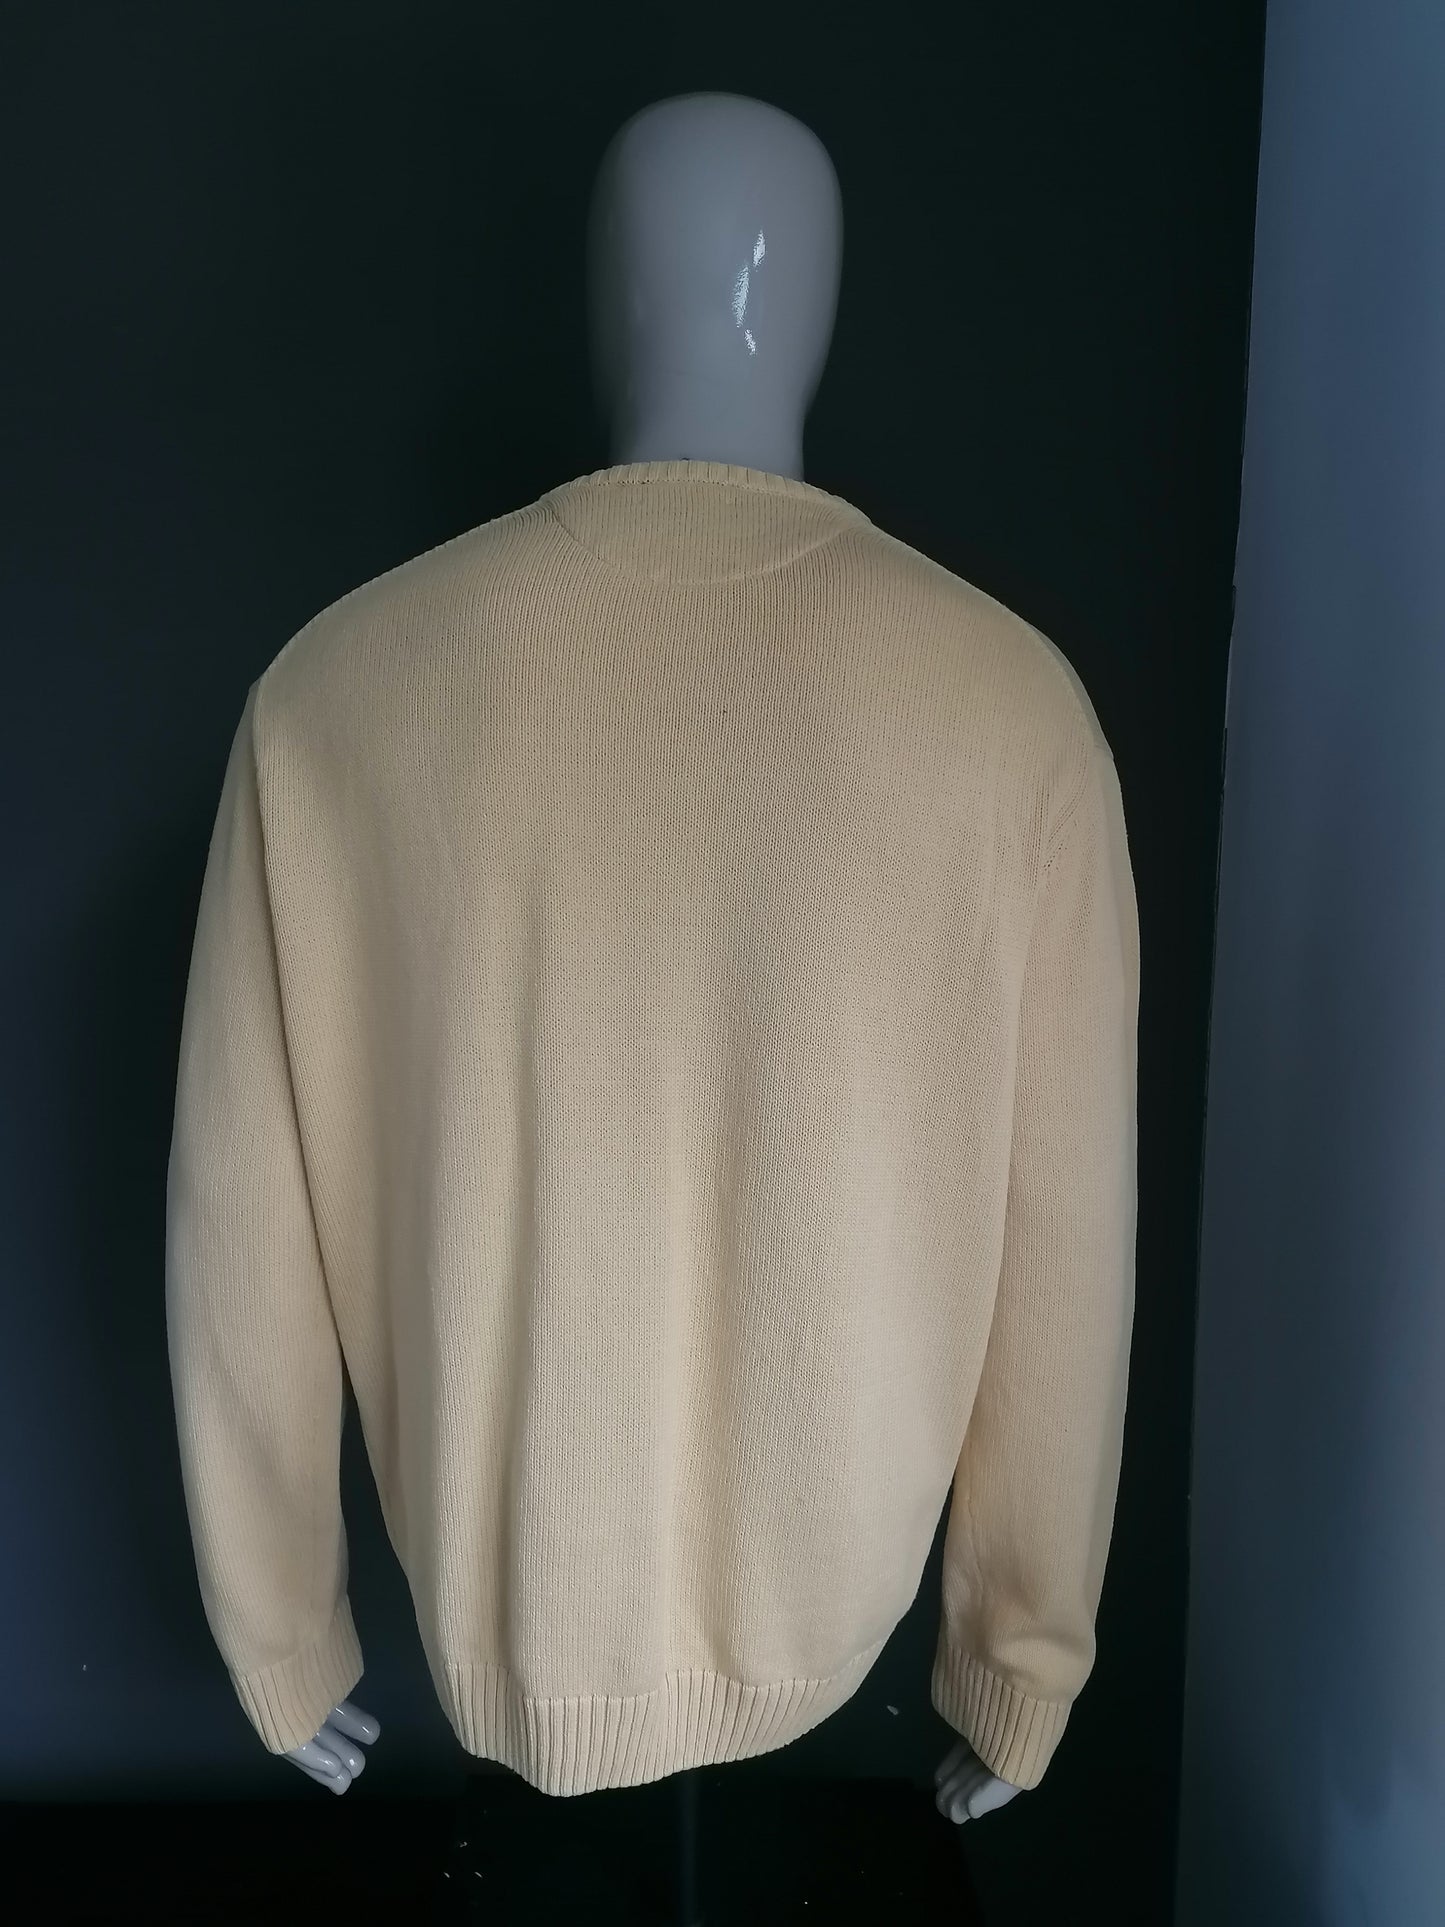 NY Coton Katoenen trui met V-Hals. Geel gekleurd. Maat XXL / 2XL.